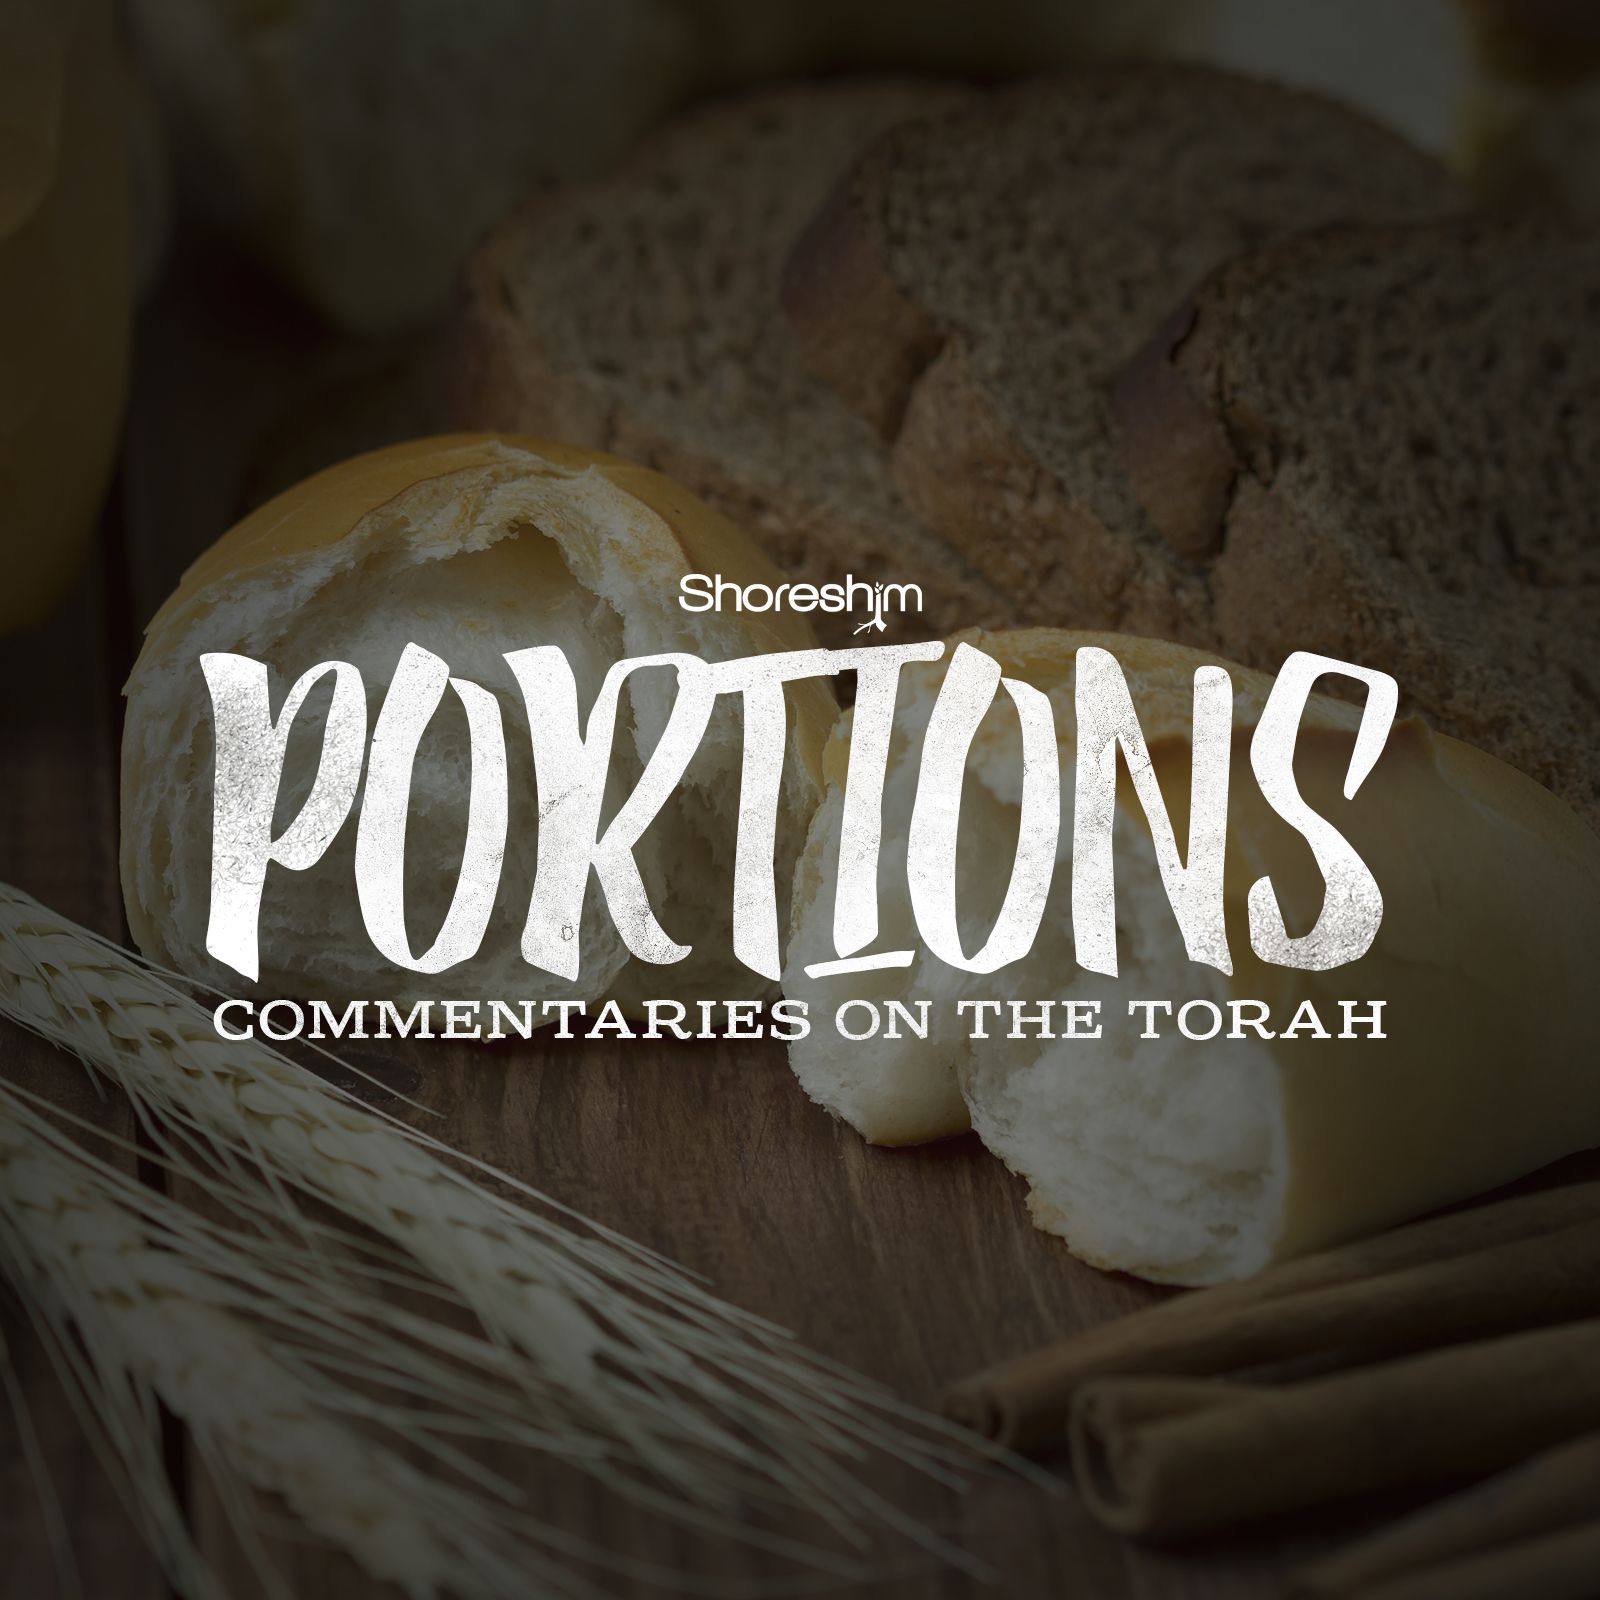 Torah Portion – Kedoshim (Vayikra 19:1 – 20:27)